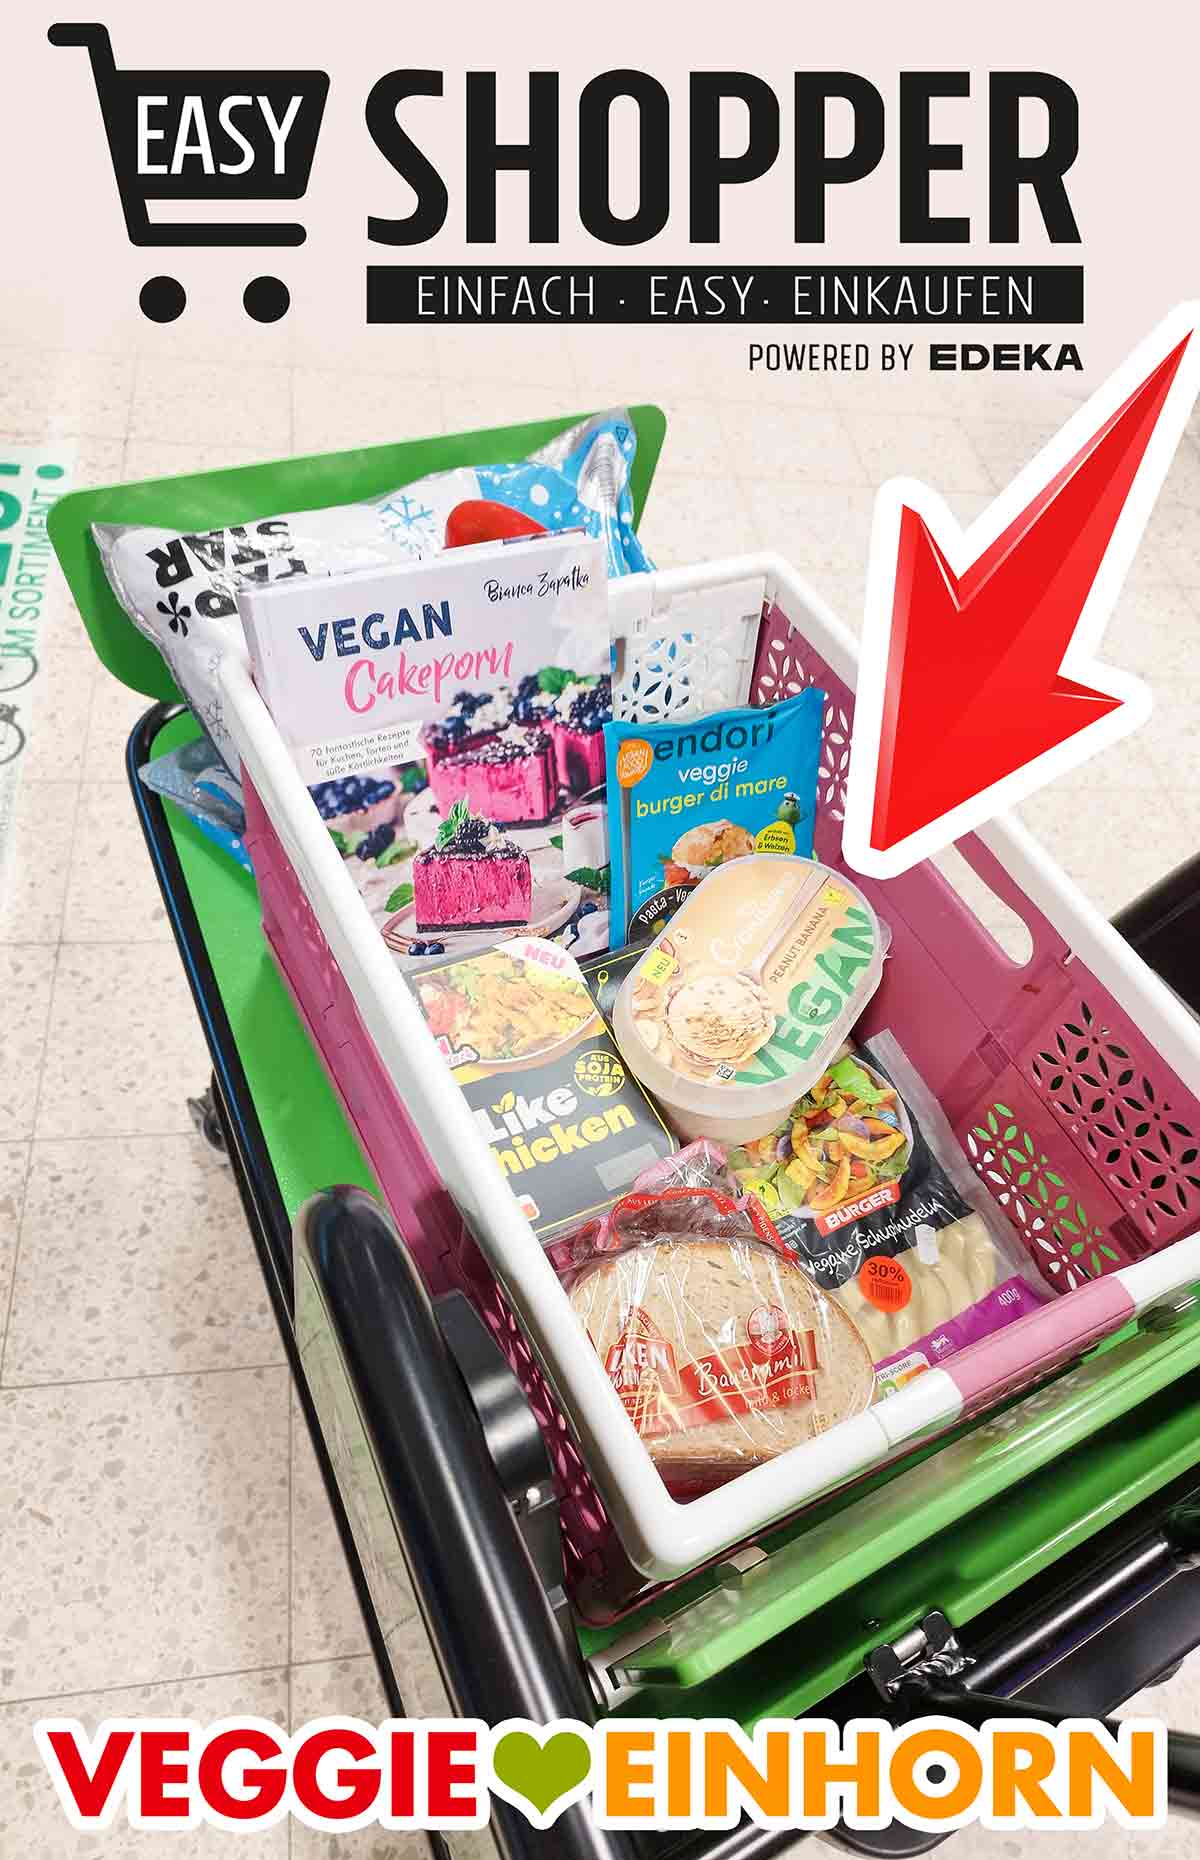 Easy Shopper bei Marktkauf mit veganen Lebensmitteln und einem veganen Backbuch von Bianca Zapatka